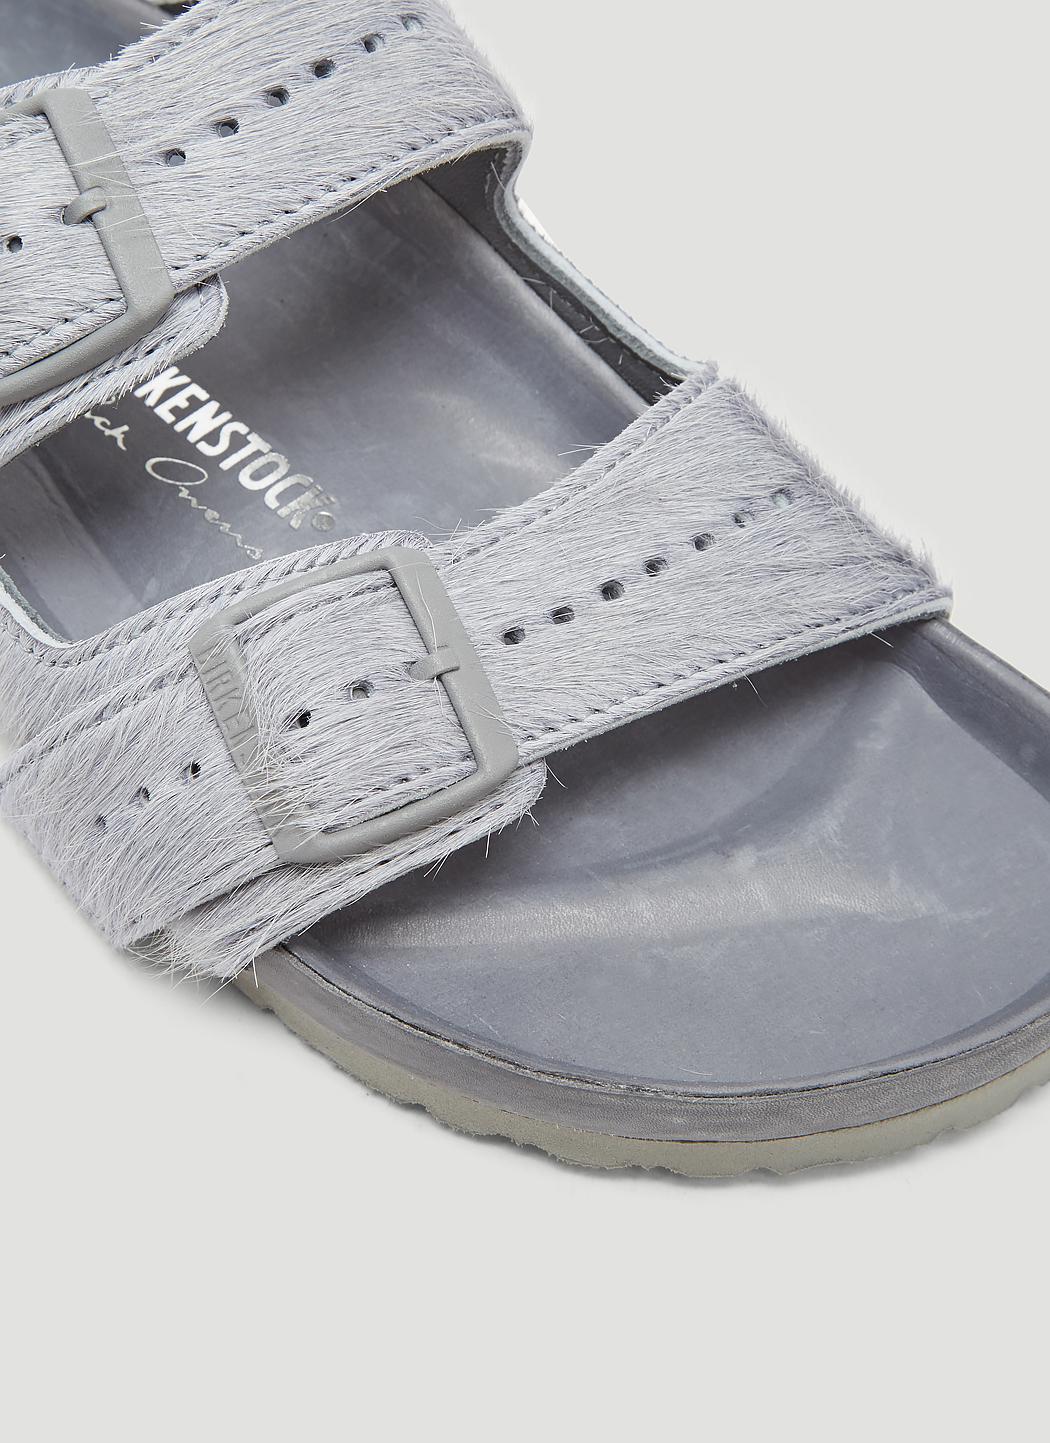 Rick Owens X Birkenstock Arizona Fur Sandals In Grey in Gray for Men - Lyst